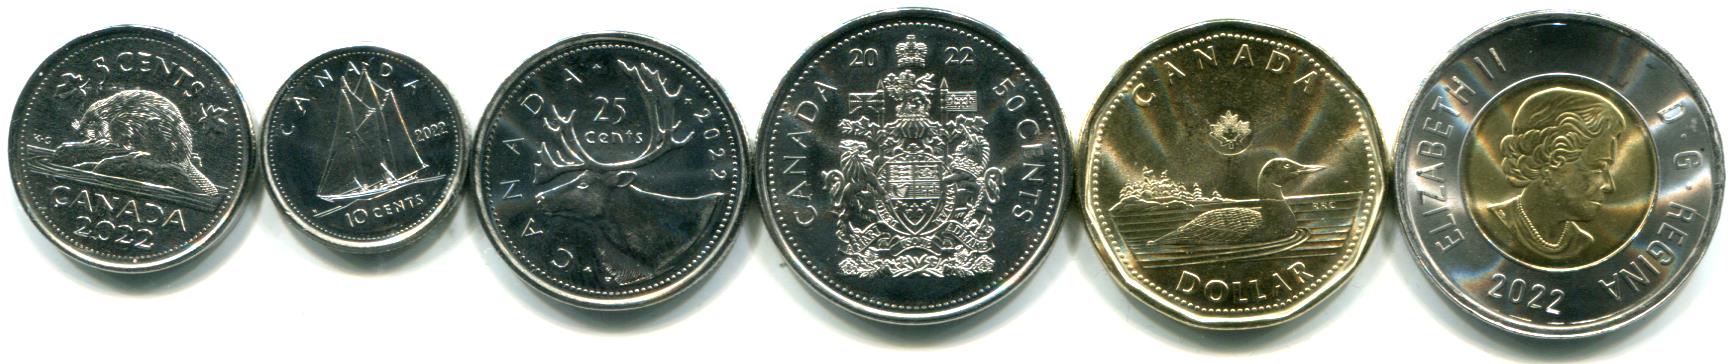 Details about   2013 Canada Colorized Commemorative 25 Cent Piece **Mallard** w/ Box & COA 